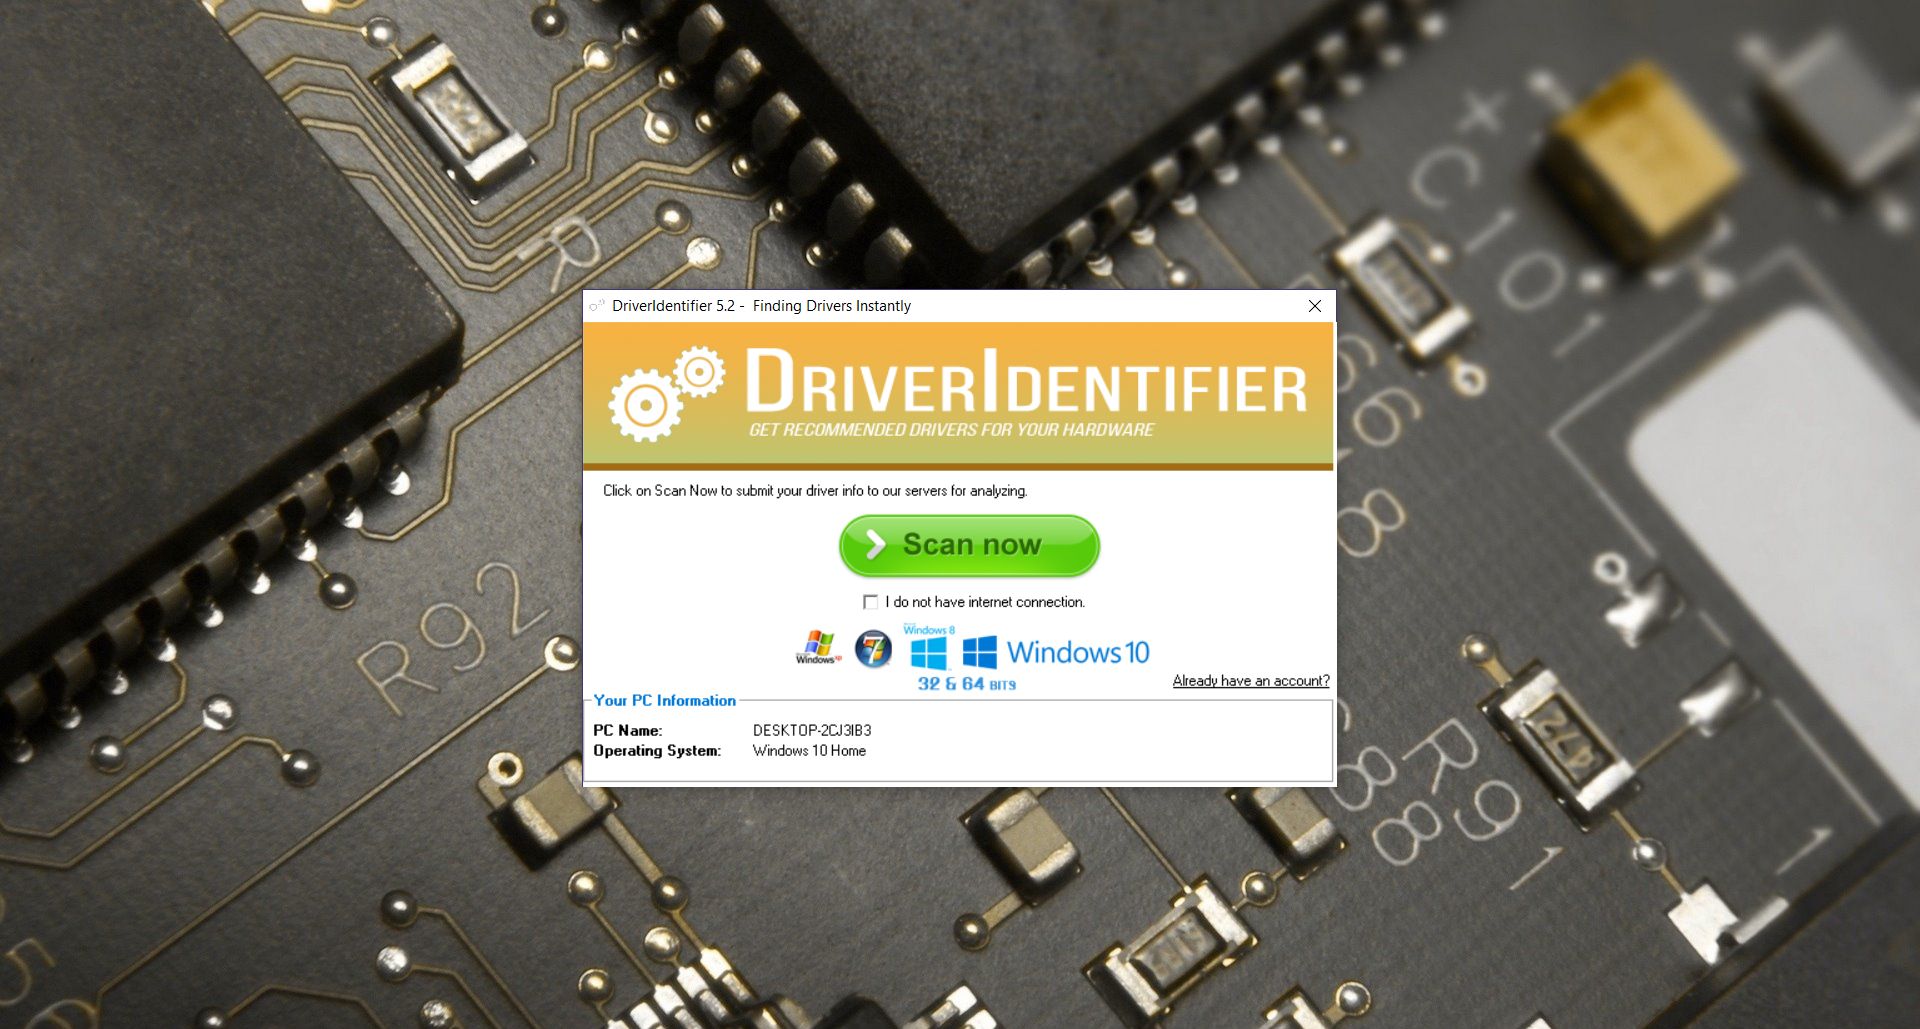 driveridentifier 4.2.8